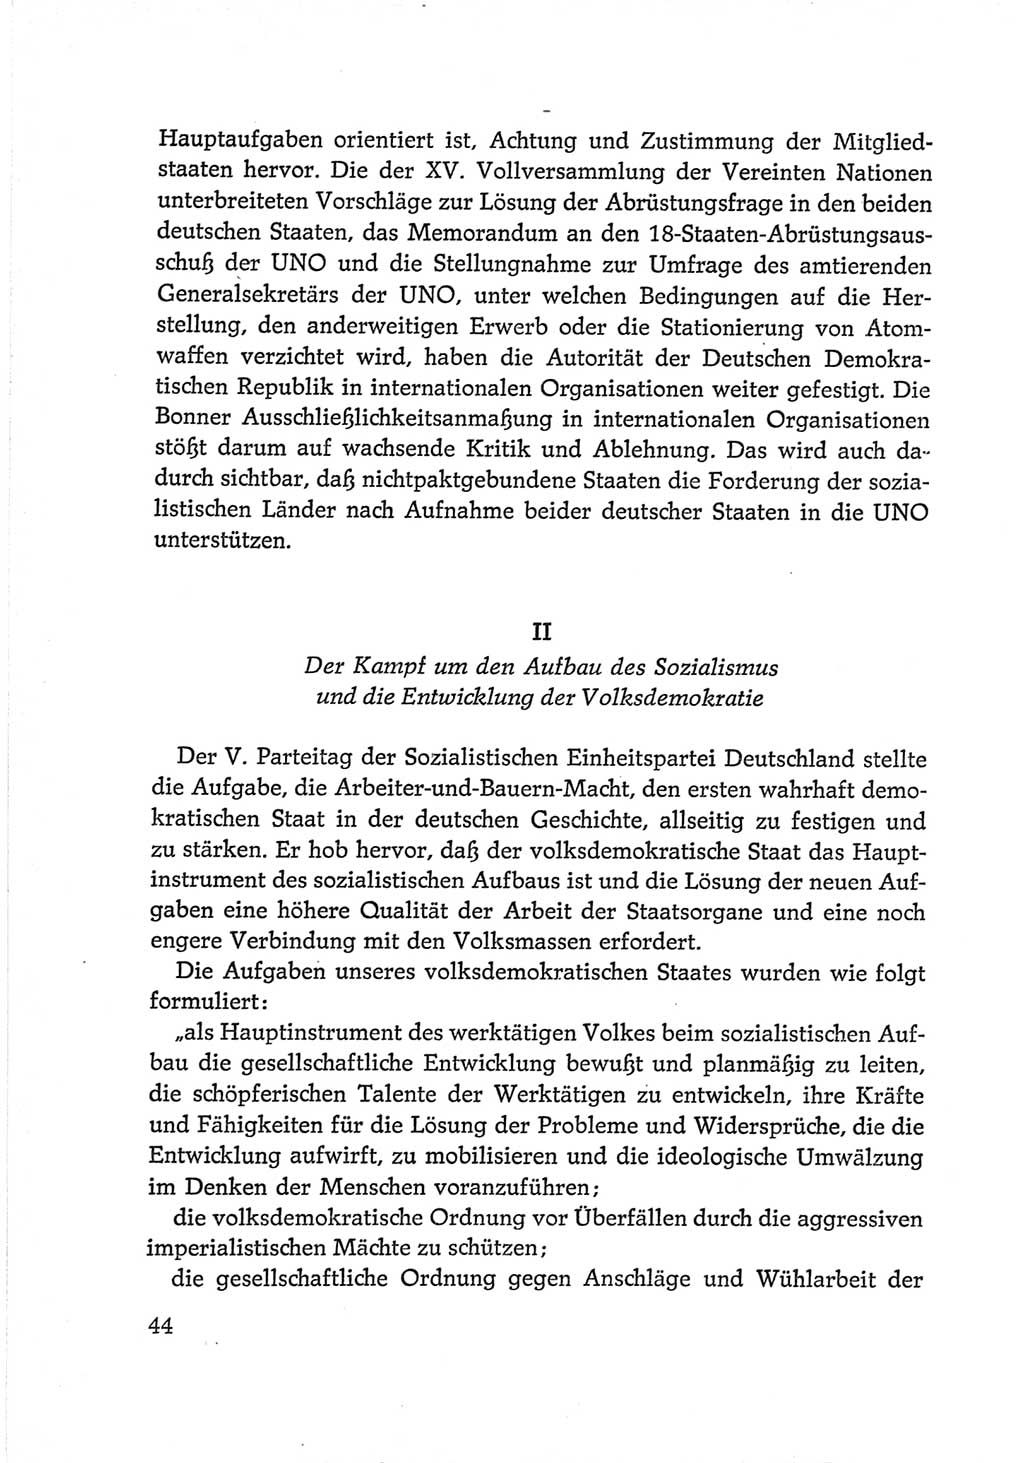 Protokoll der Verhandlungen des Ⅵ. Parteitages der Sozialistischen Einheitspartei Deutschlands (SED) [Deutsche Demokratische Republik (DDR)] 1963, Band Ⅳ, Seite 44 (Prot. Verh. Ⅵ. PT SED DDR 1963, Bd. Ⅳ, S. 44)